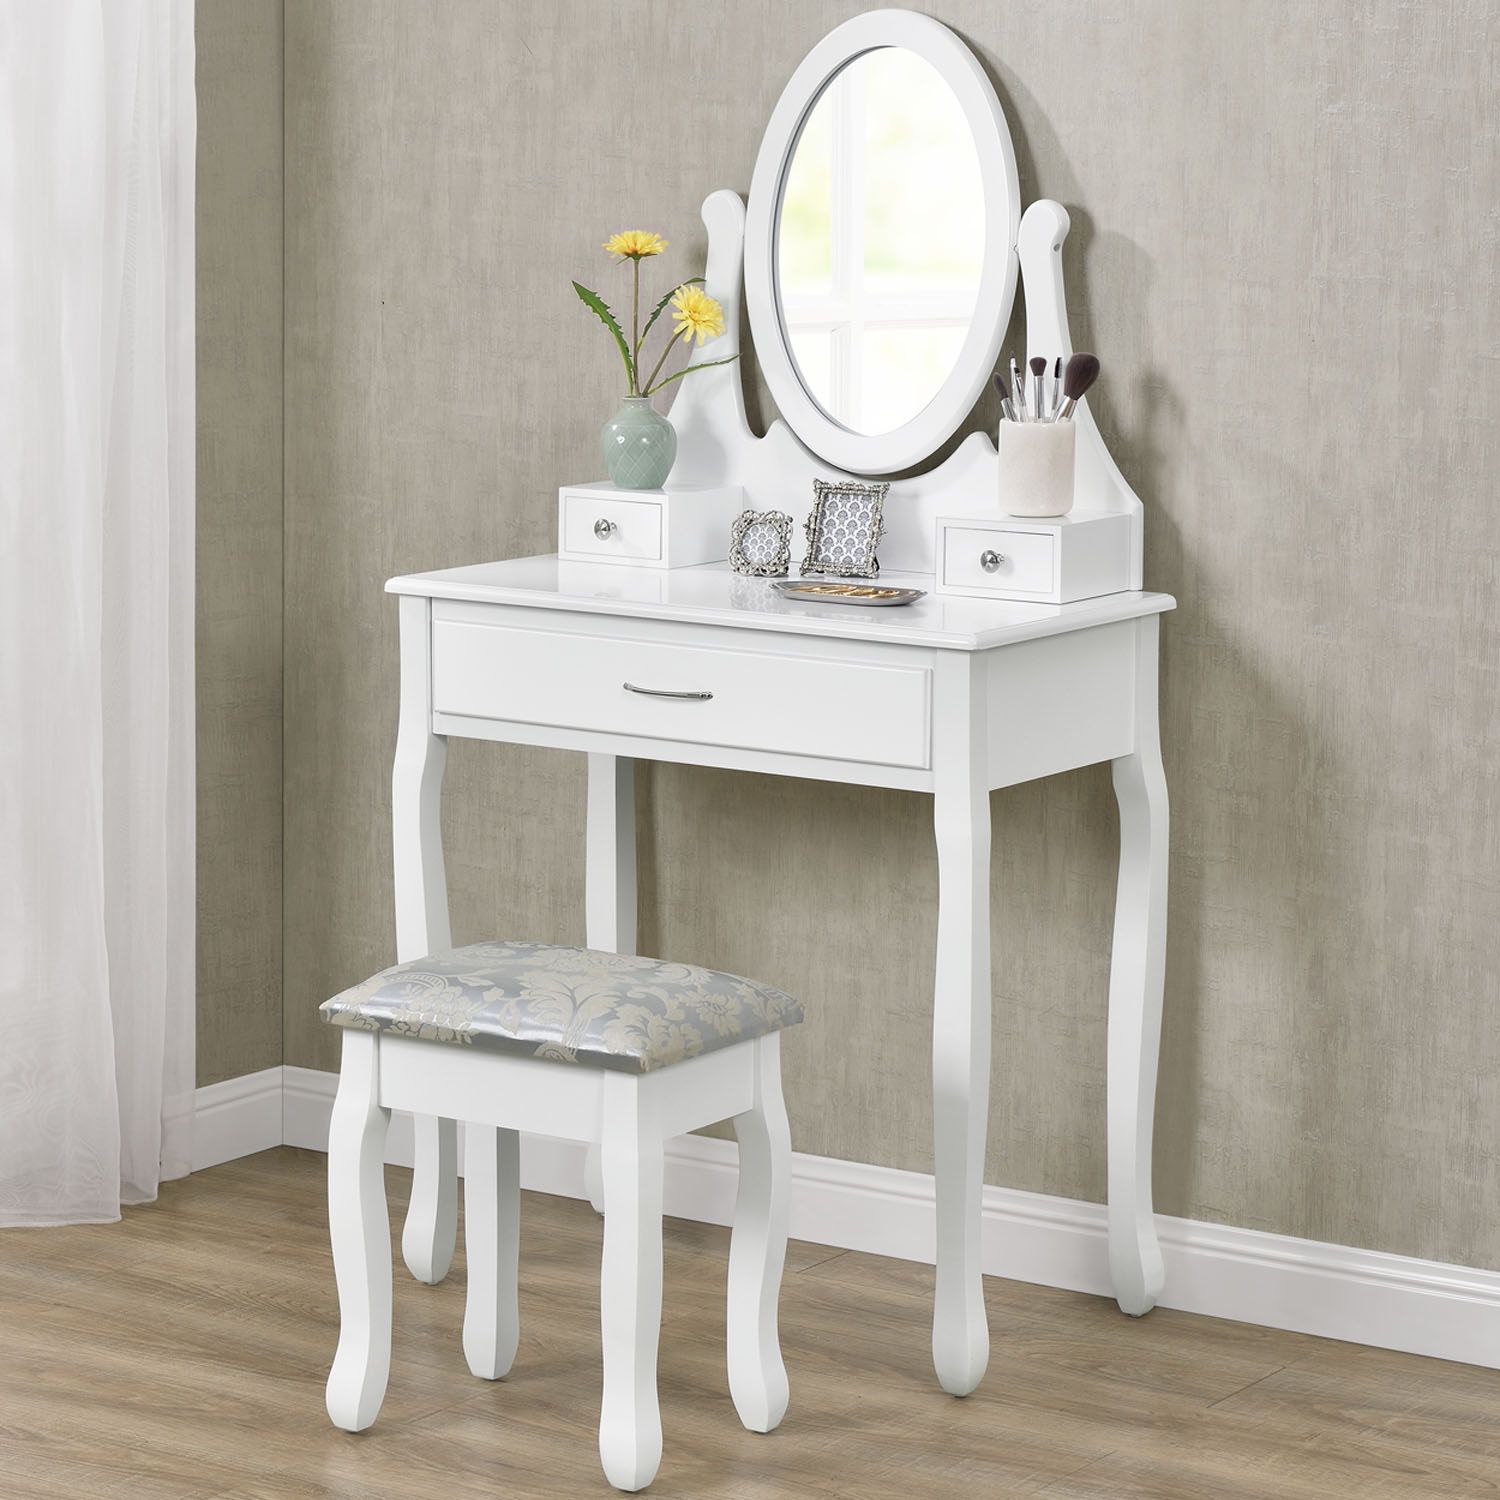 Eshopist Toaletný stolík \"Lena\" biely so zrkadlom a stoličkou - Eshopist.sk